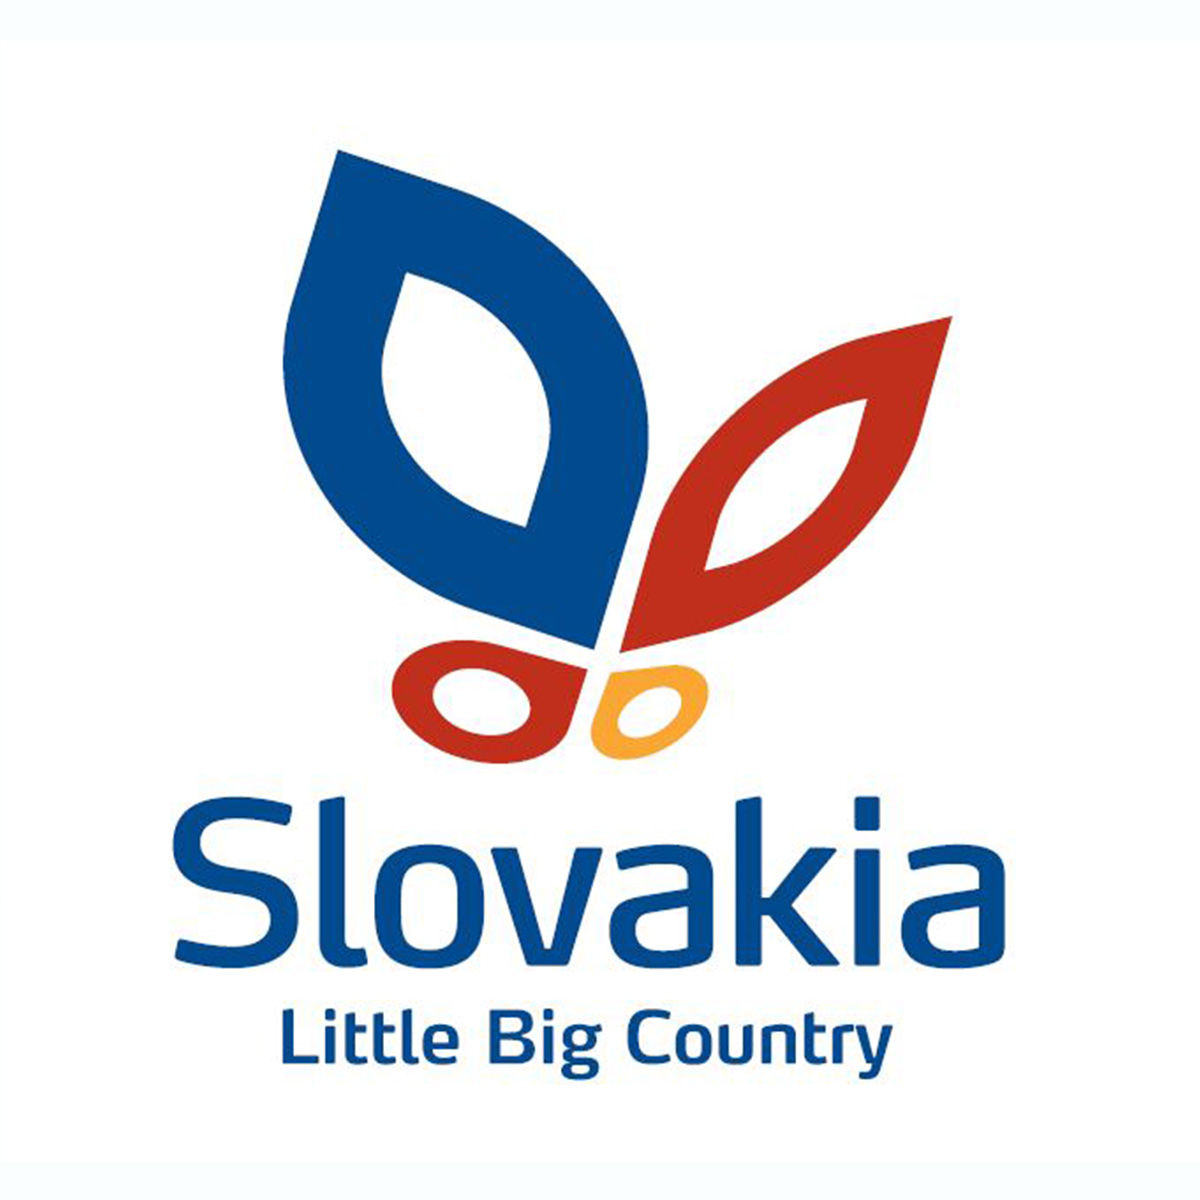 Travel in Slovakia